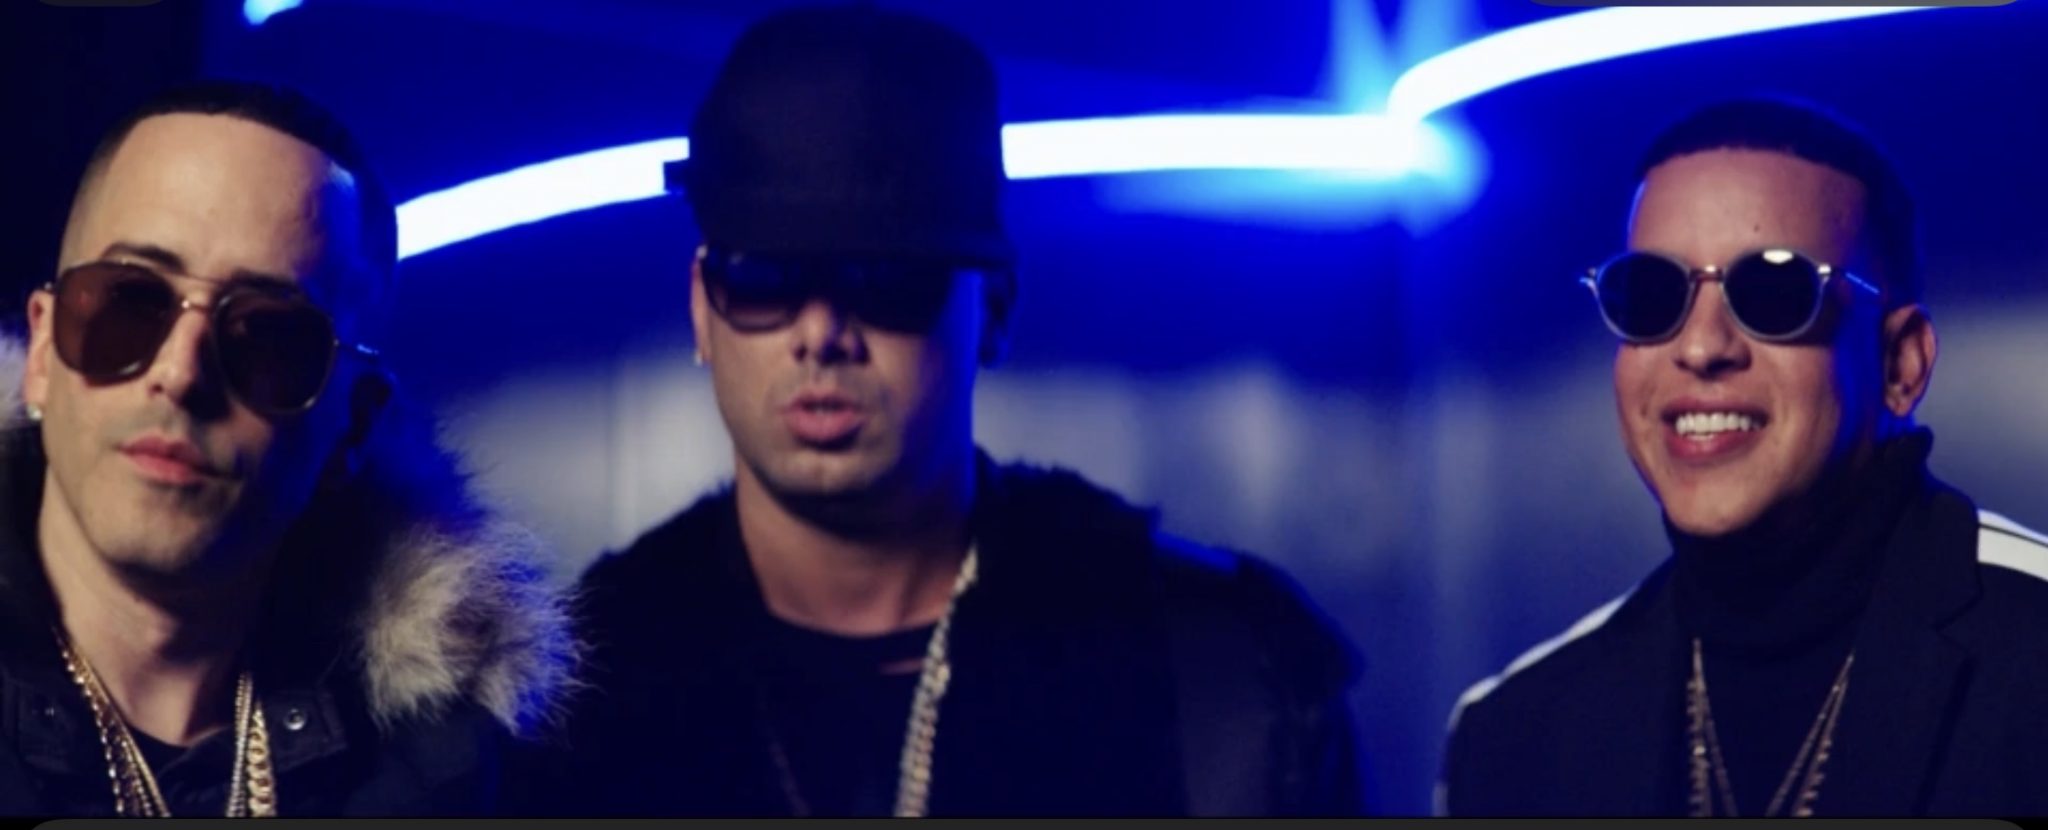 Wisin adelanta el estreno de su video junto a Yandel y Daddy Yankee «Todo comienza en la disco» y ya está disponible